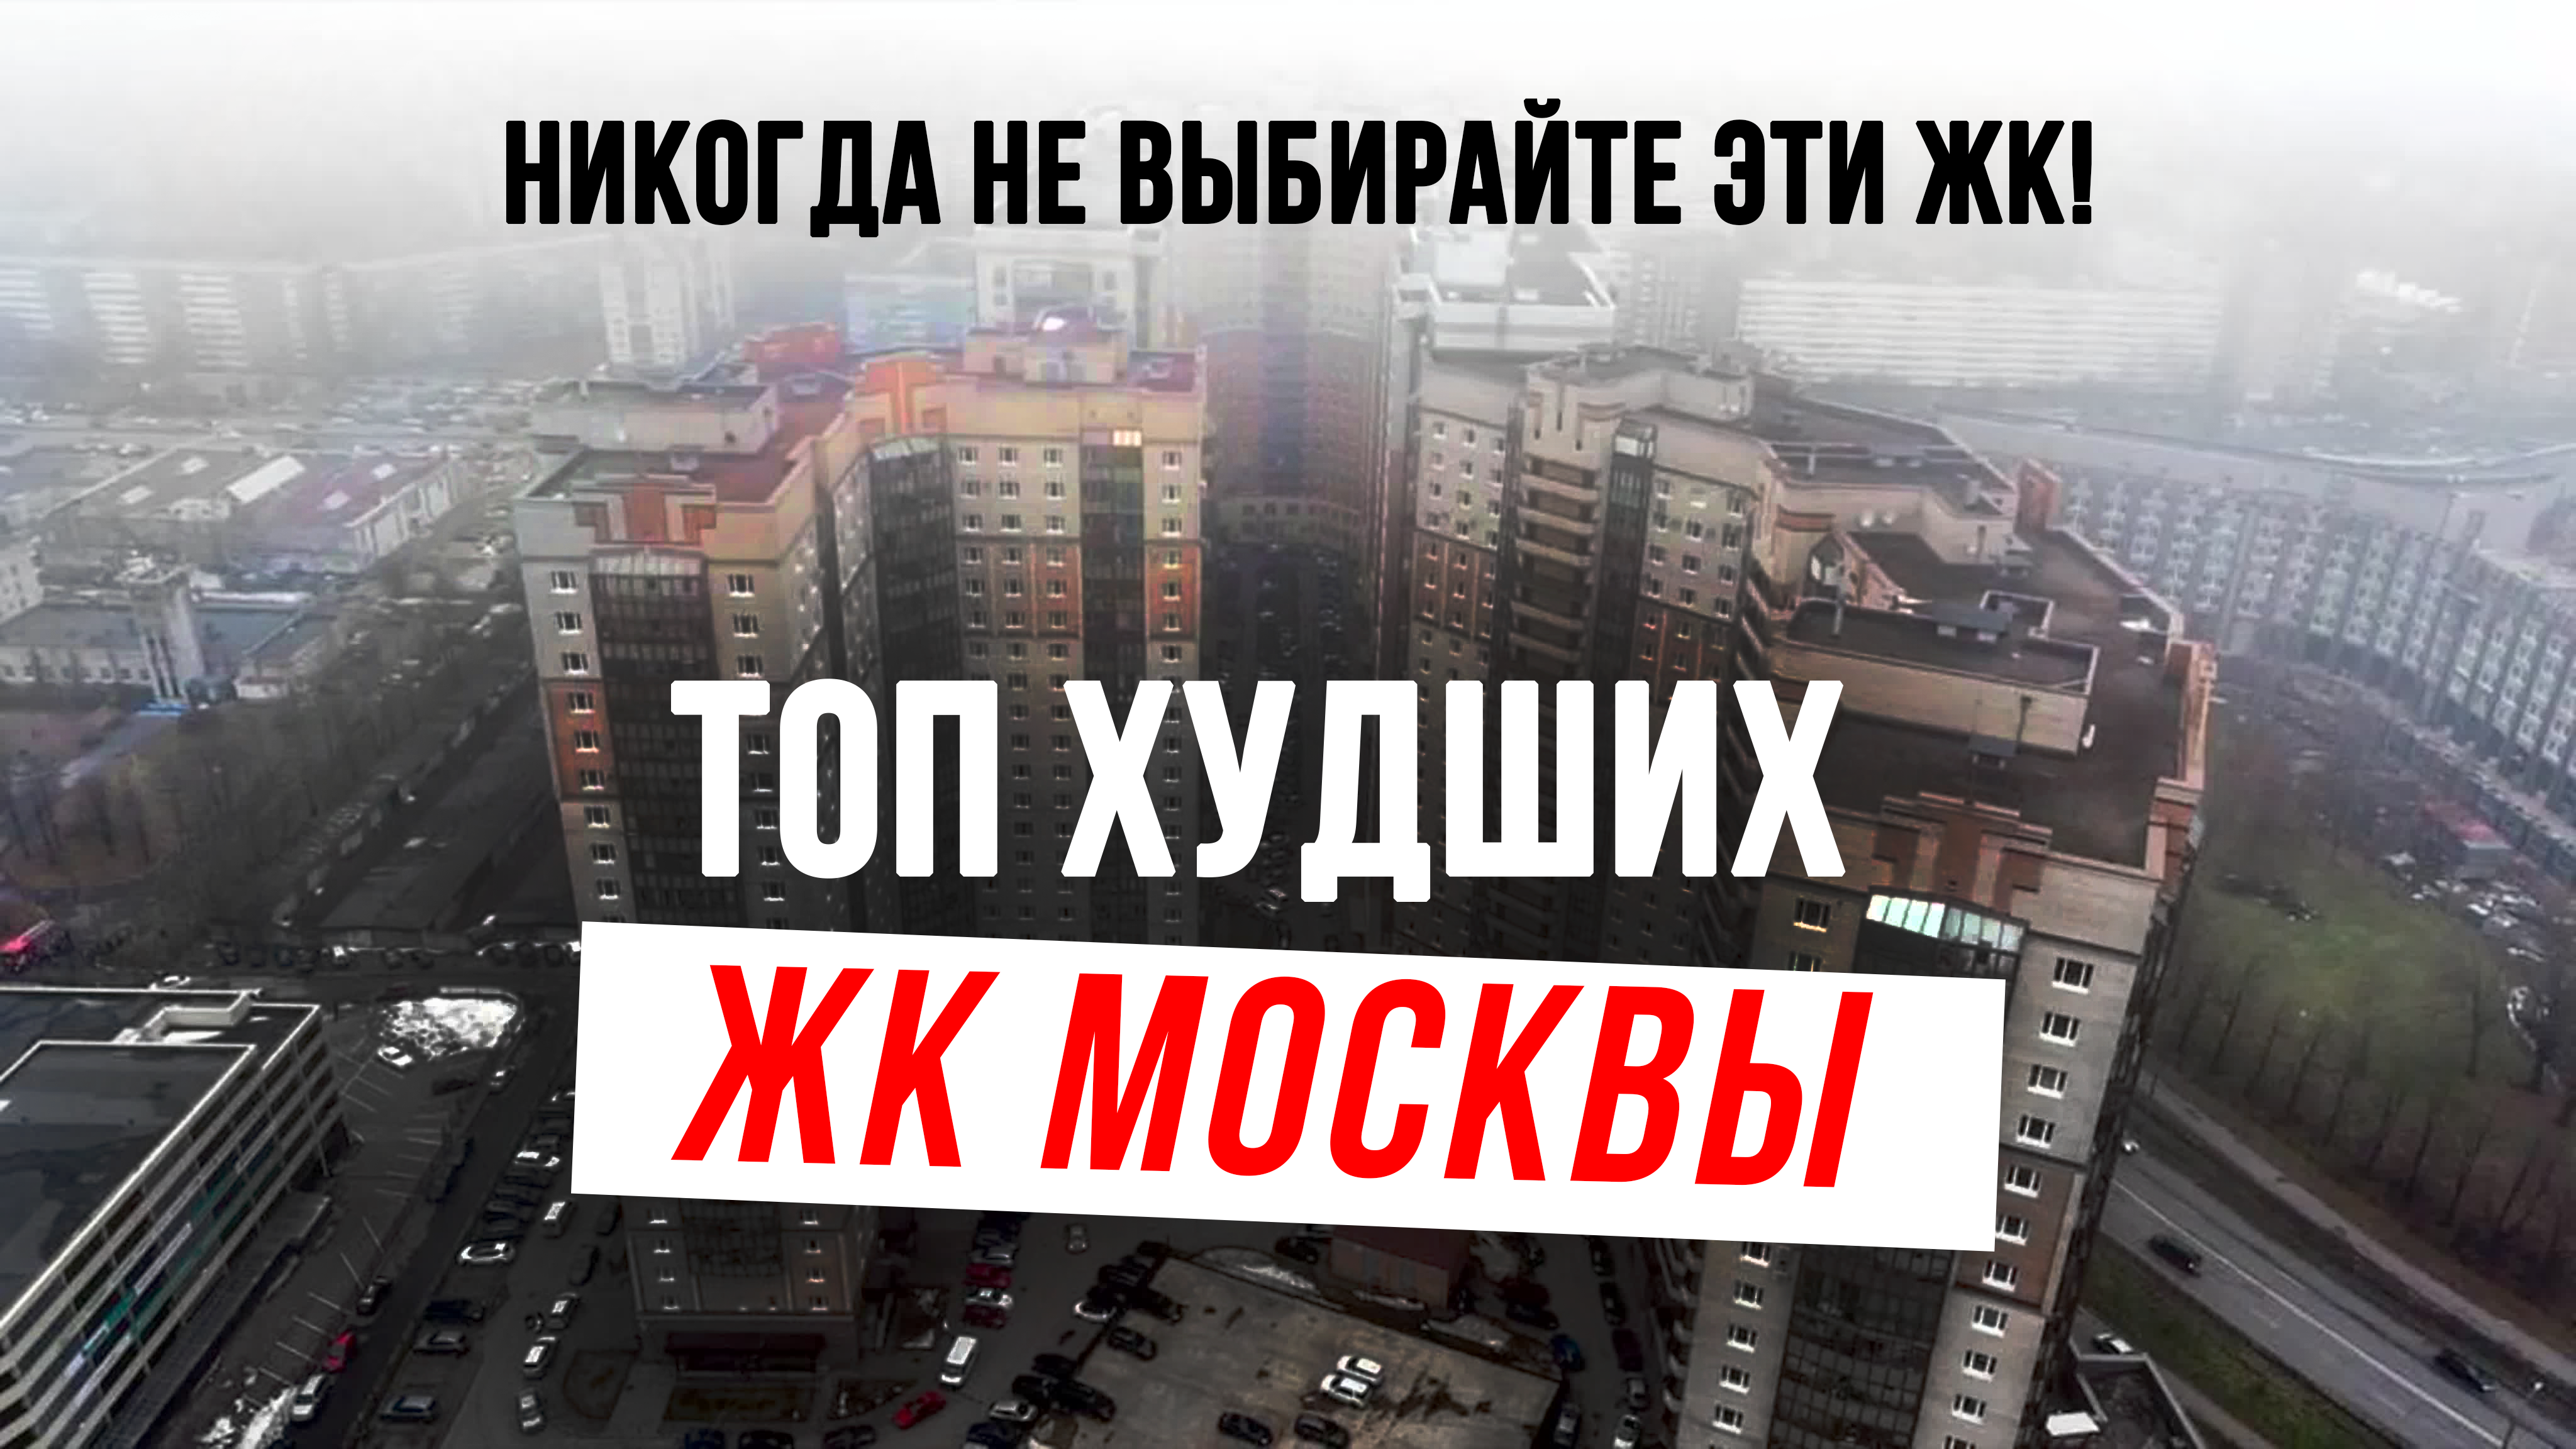 Худшие новостройки Москвы: Реальные проблемы и обманутые ожидания! 🏢😱 #москва #недвижимость